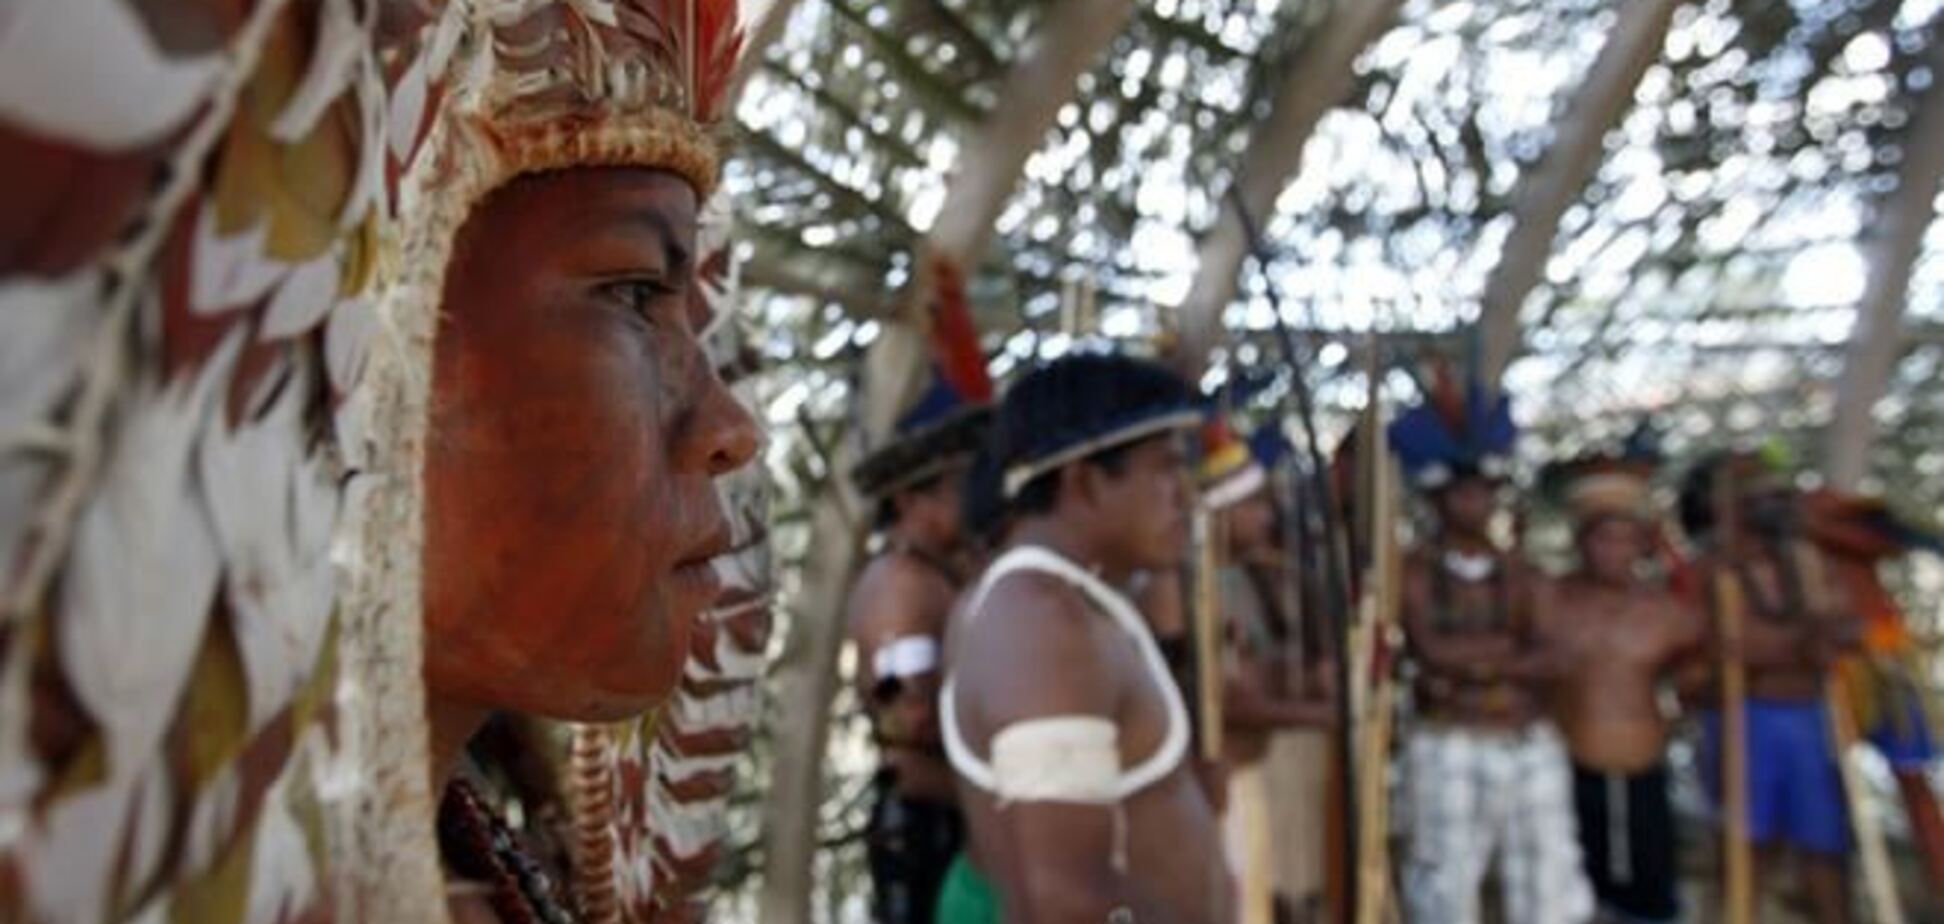 XII Игры коренных народов Южной Америки